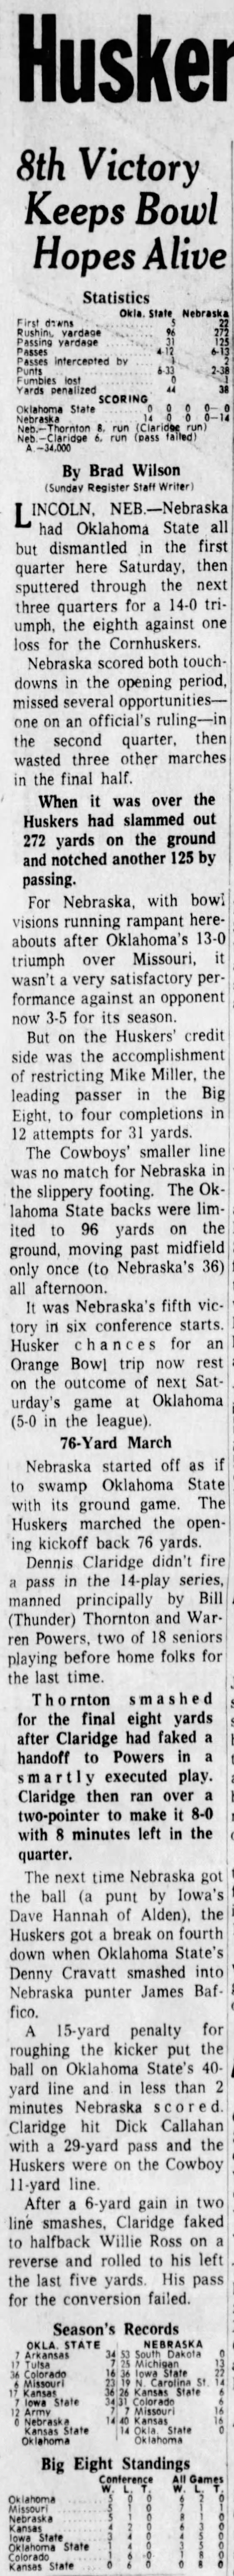 1962 Nebraska-OSU football Register